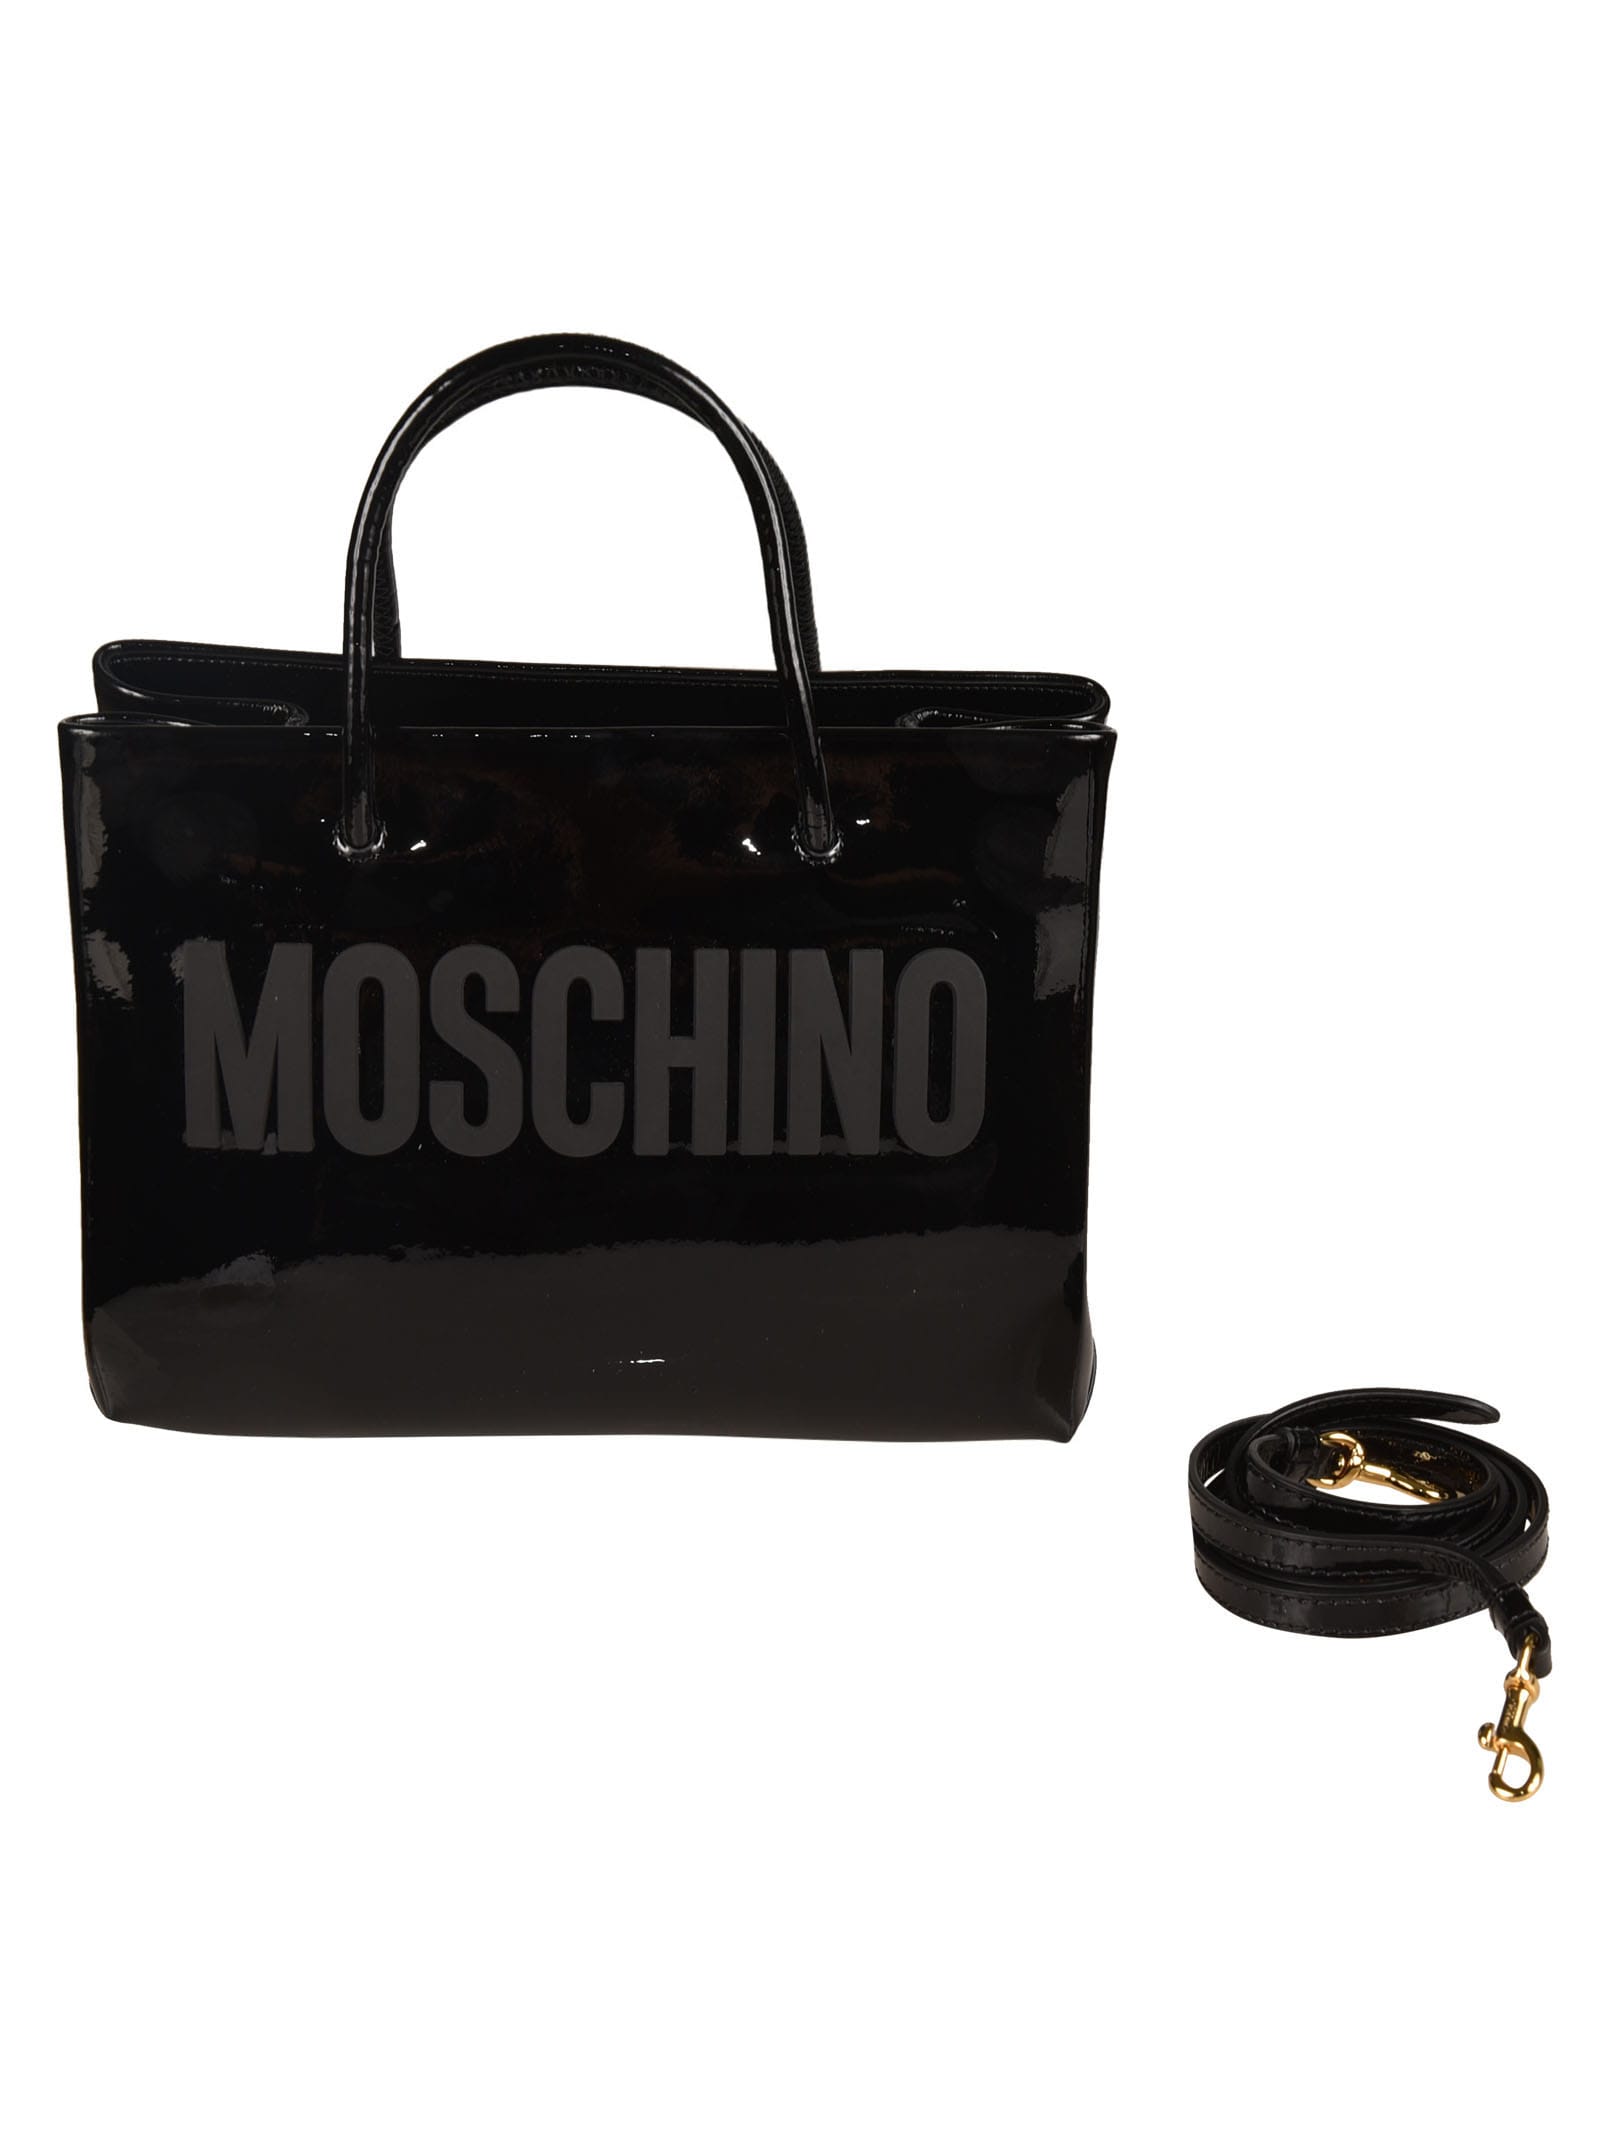 Moschino Logo Tote